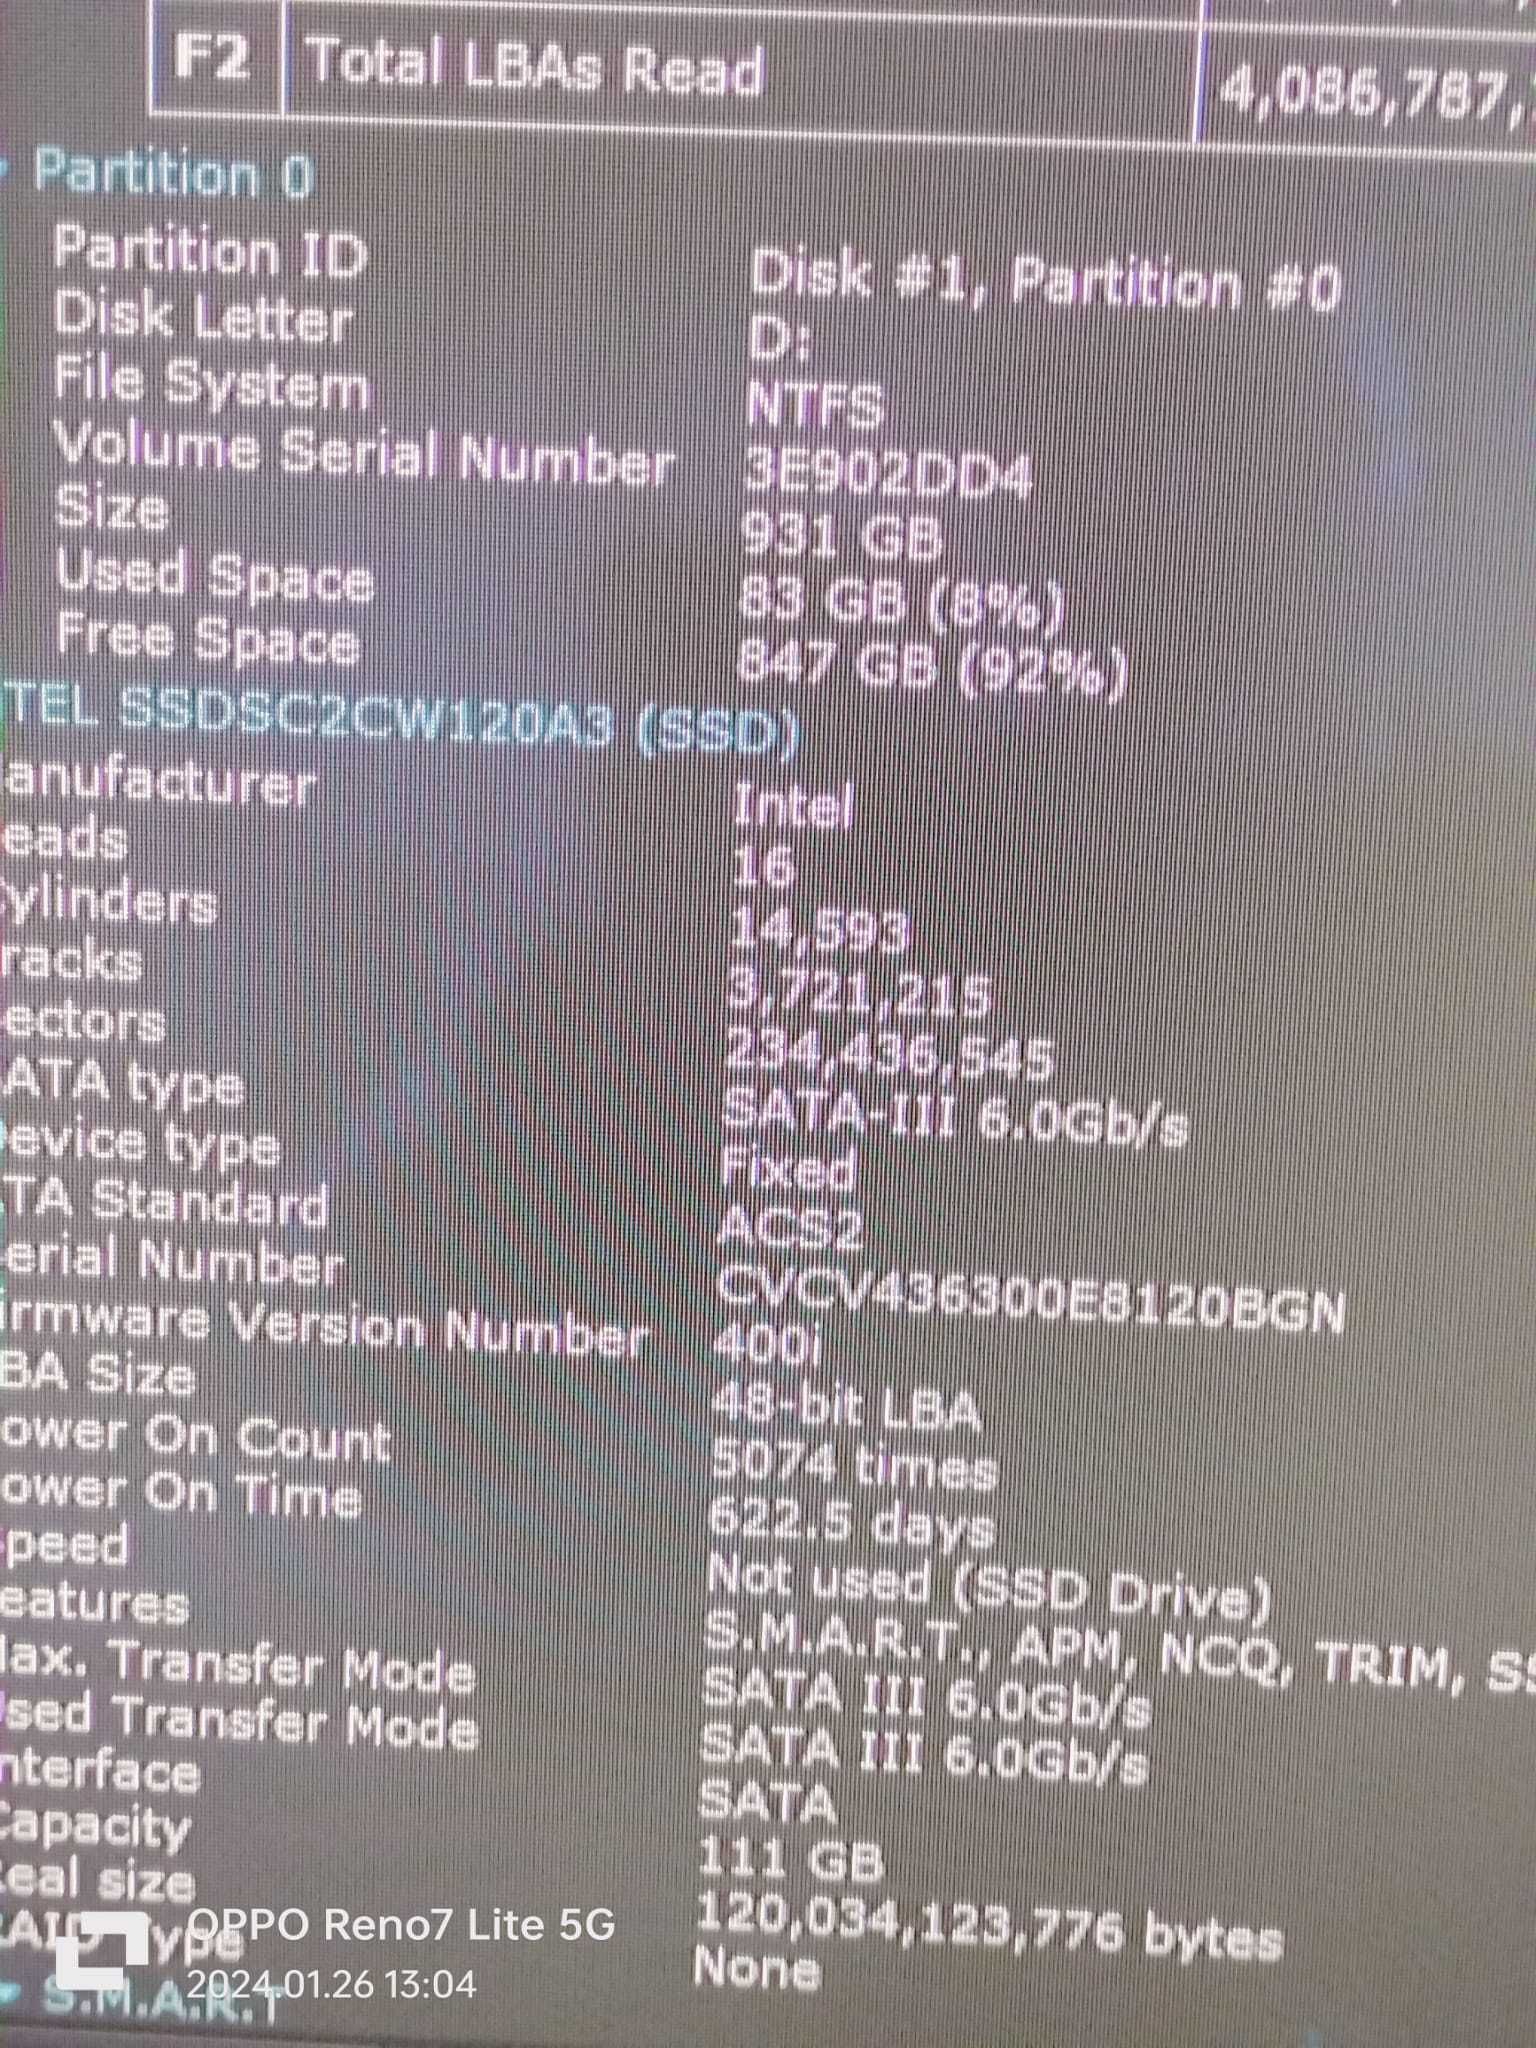 Calc Intel Core I7 6700 16 gb, vide de 8 gb, RadeonRx470GDDR5 256 BIT